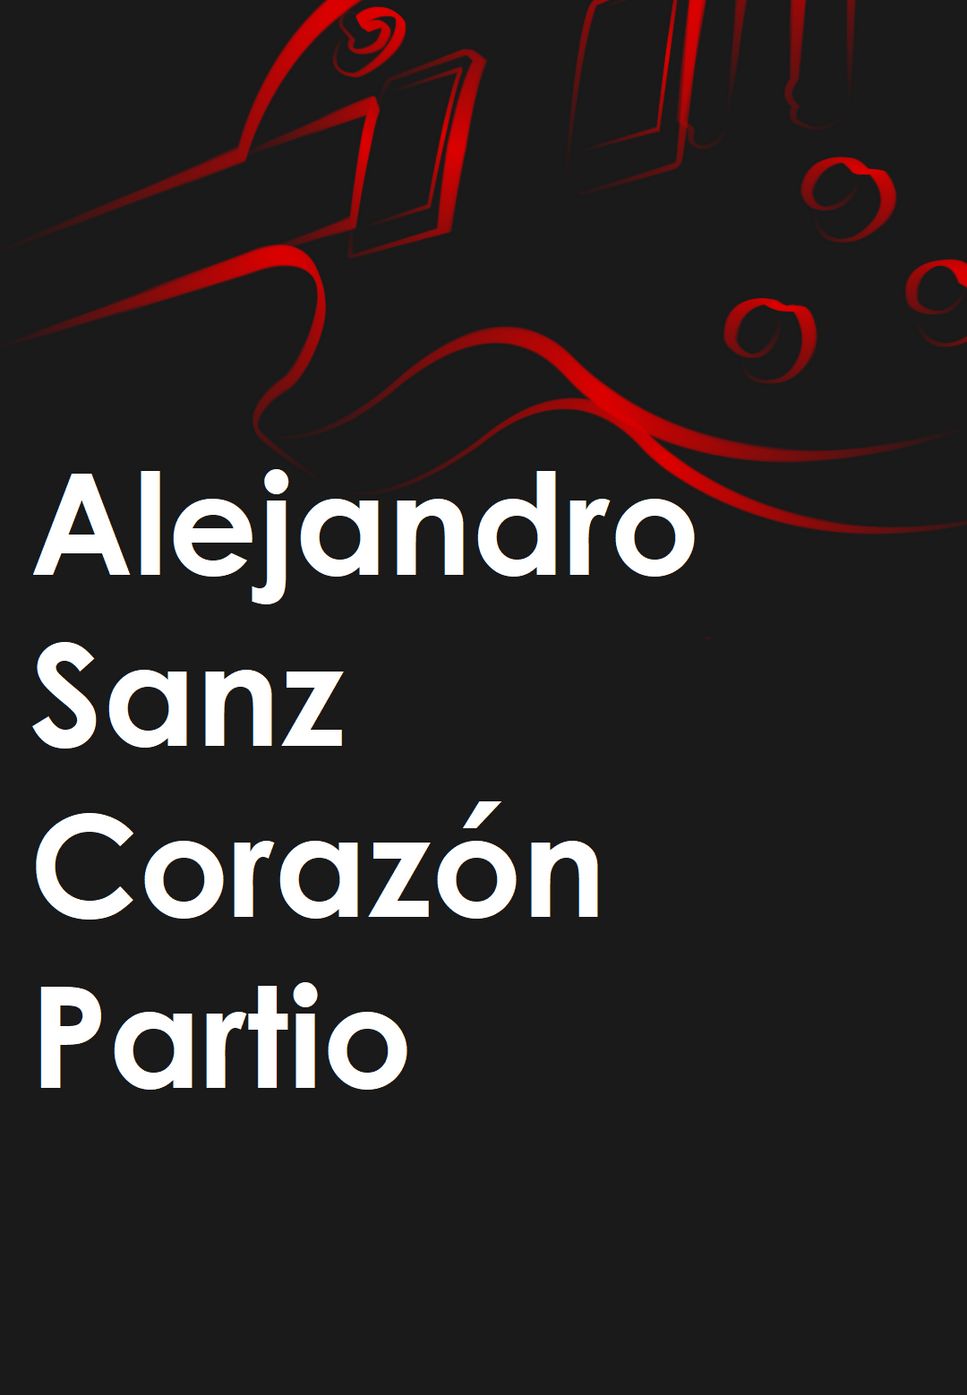 Alejandro Sanz - Corazón Partio by Mario Serrato